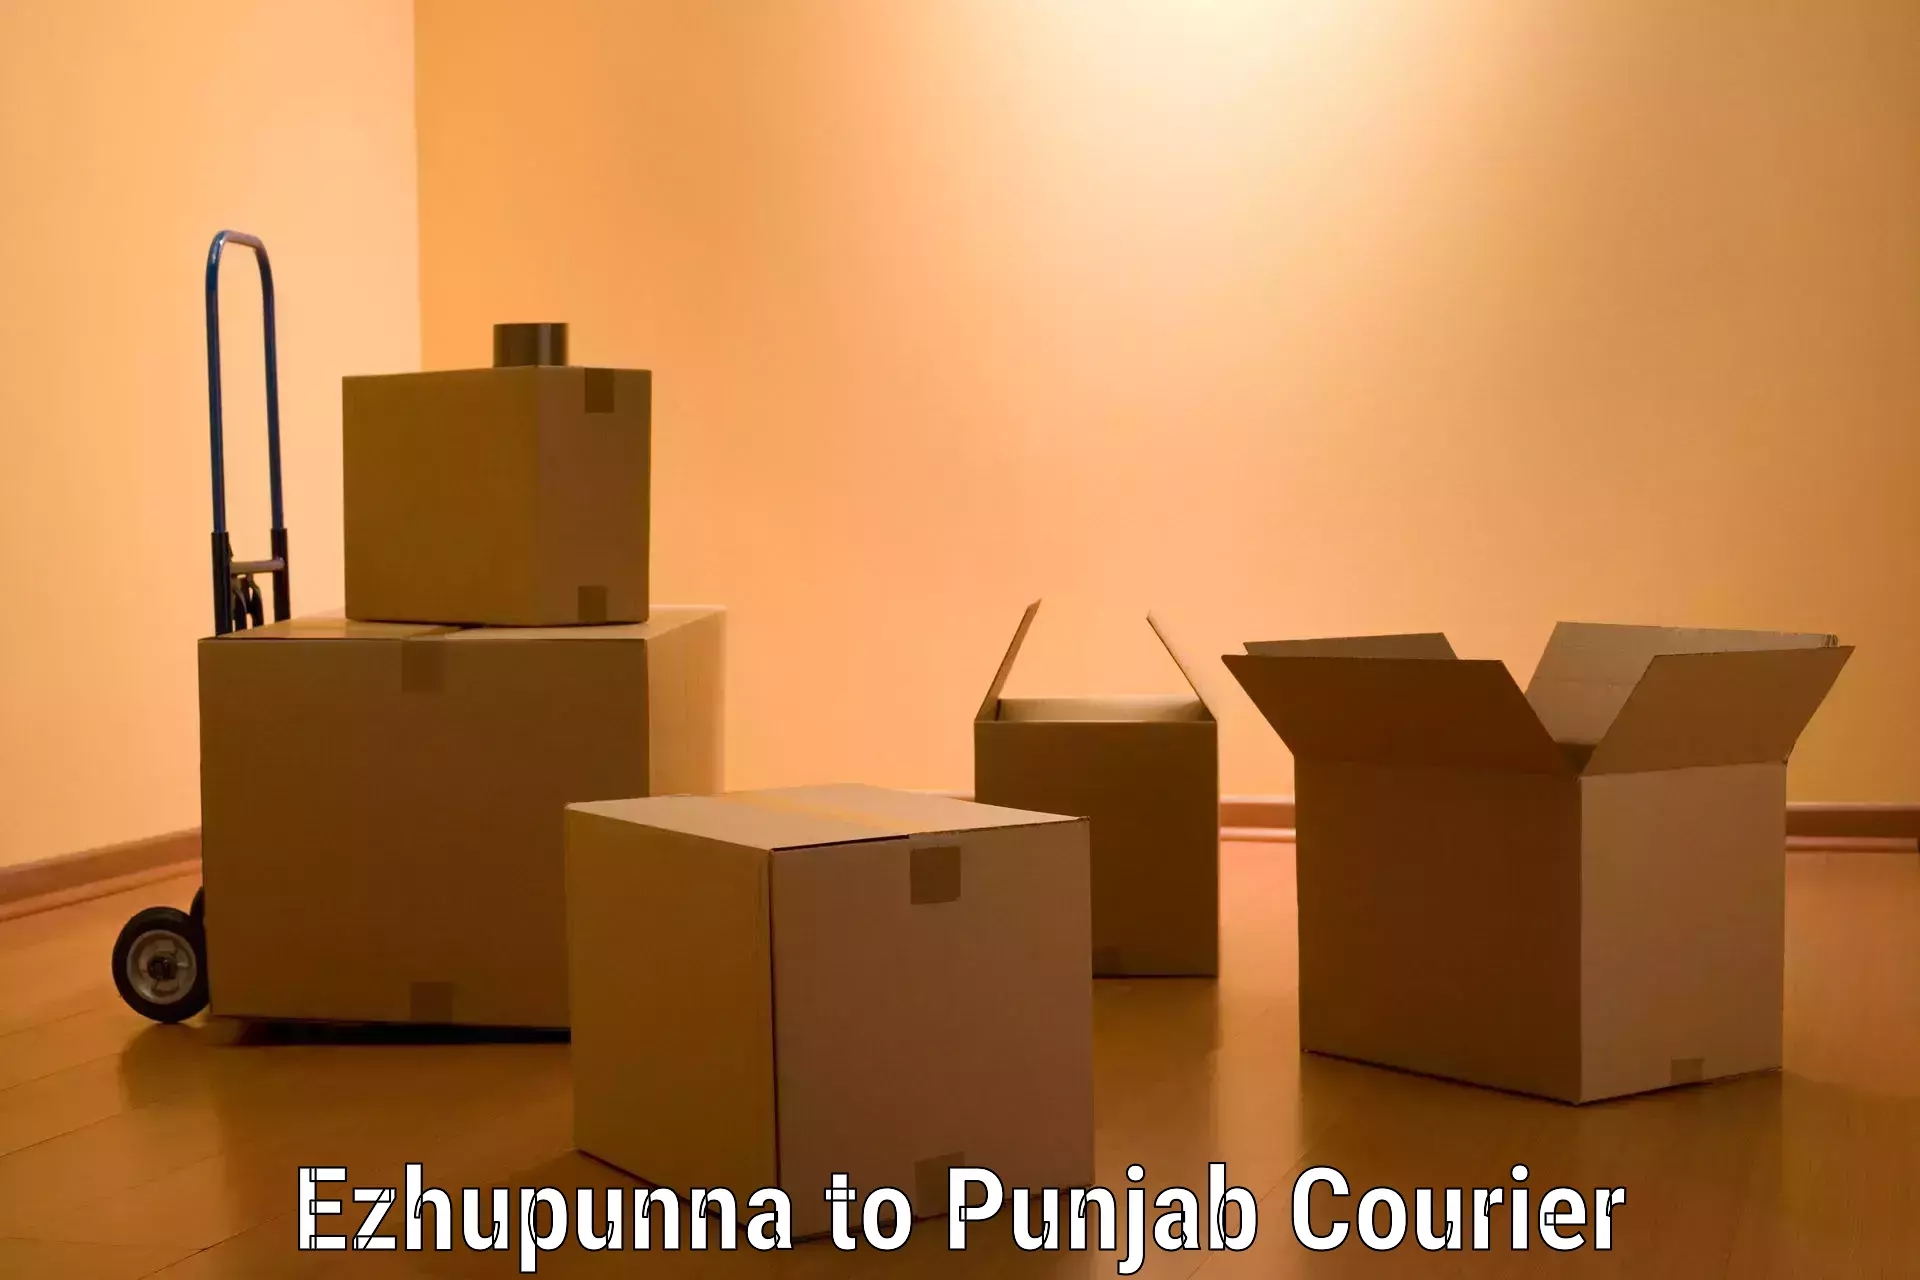 Specialized moving company Ezhupunna to Punjab